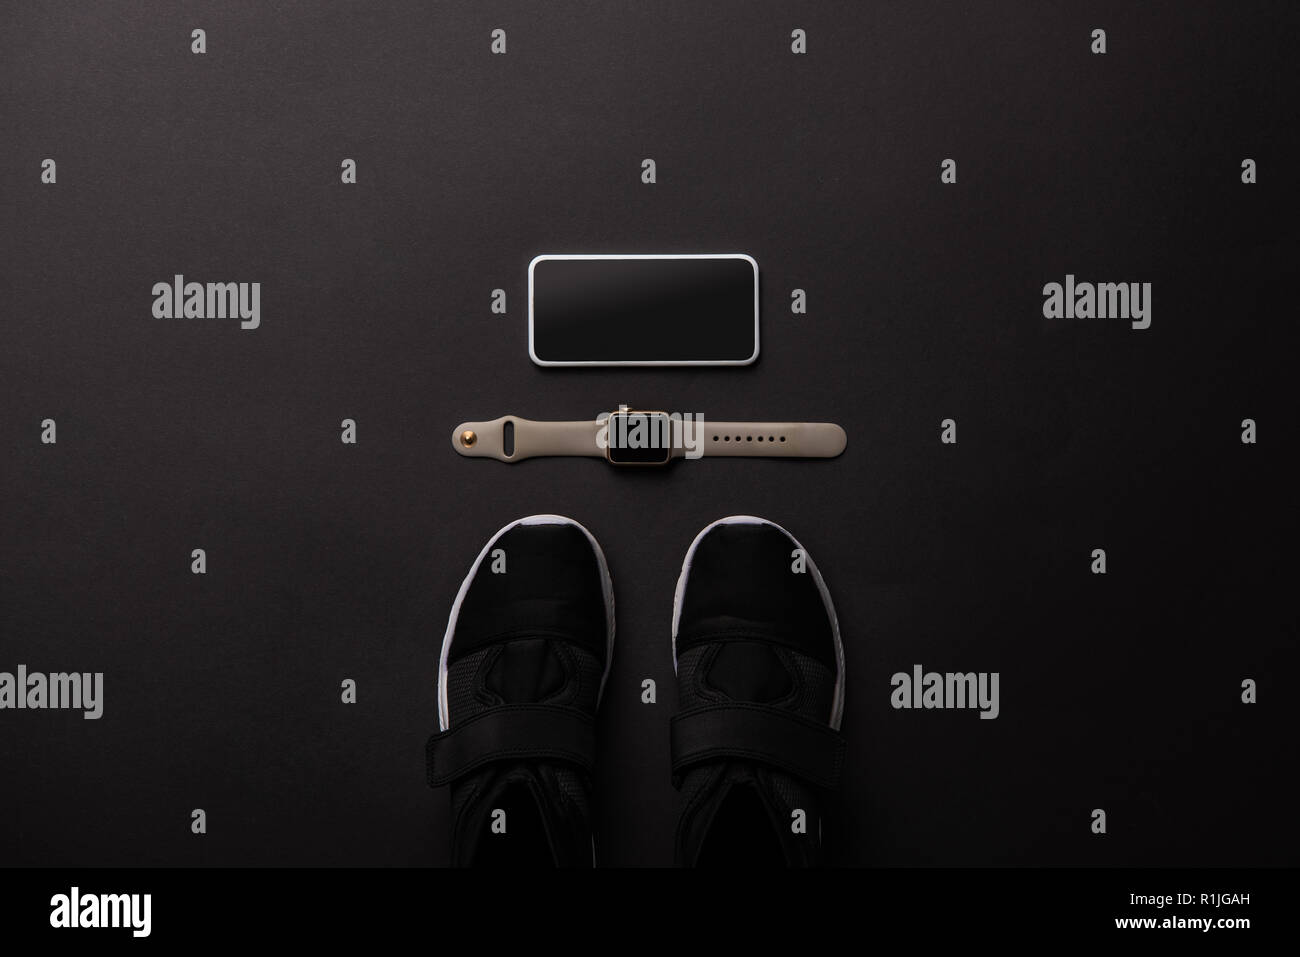 Piatto con laici disposti smartphone, smartwatch e sneakers isolato sul nero, concetto minimalista Foto Stock